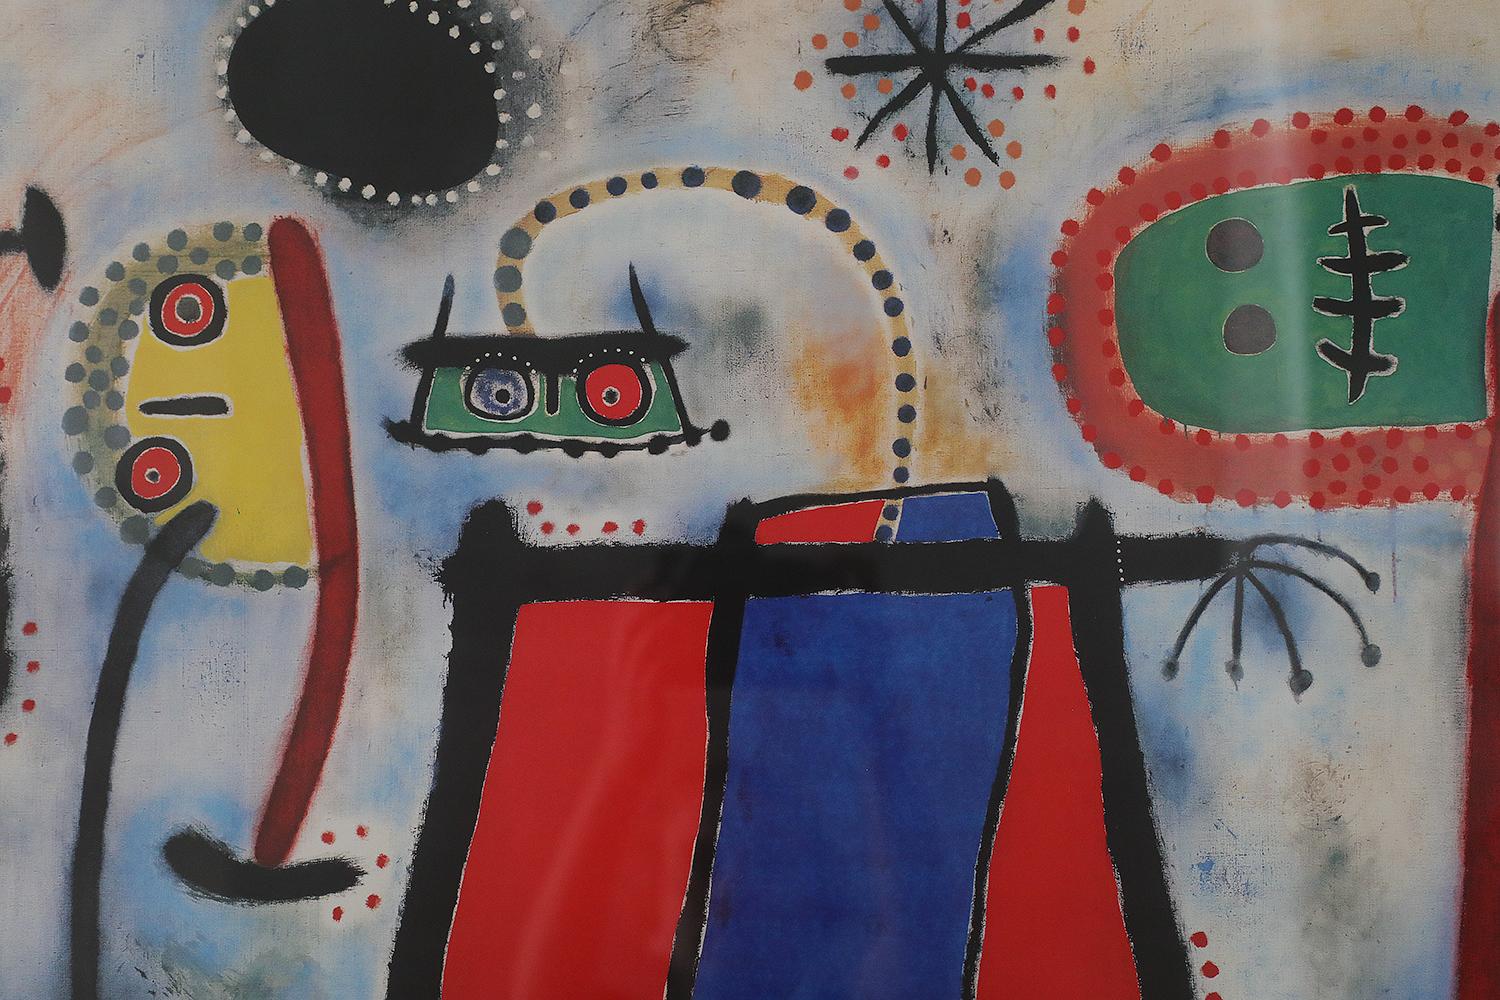 L'affiche de l'exposition de 1953 de l'œuvre de Joan Miró au musée Solomon R. Guggenheim de New York. Imprimé en Italie en 1986 par Arti Grafiche Ricordi. Affiche de Joan Miró, peintre, sculpteur et céramiste catalan. Le maître du surréalisme est